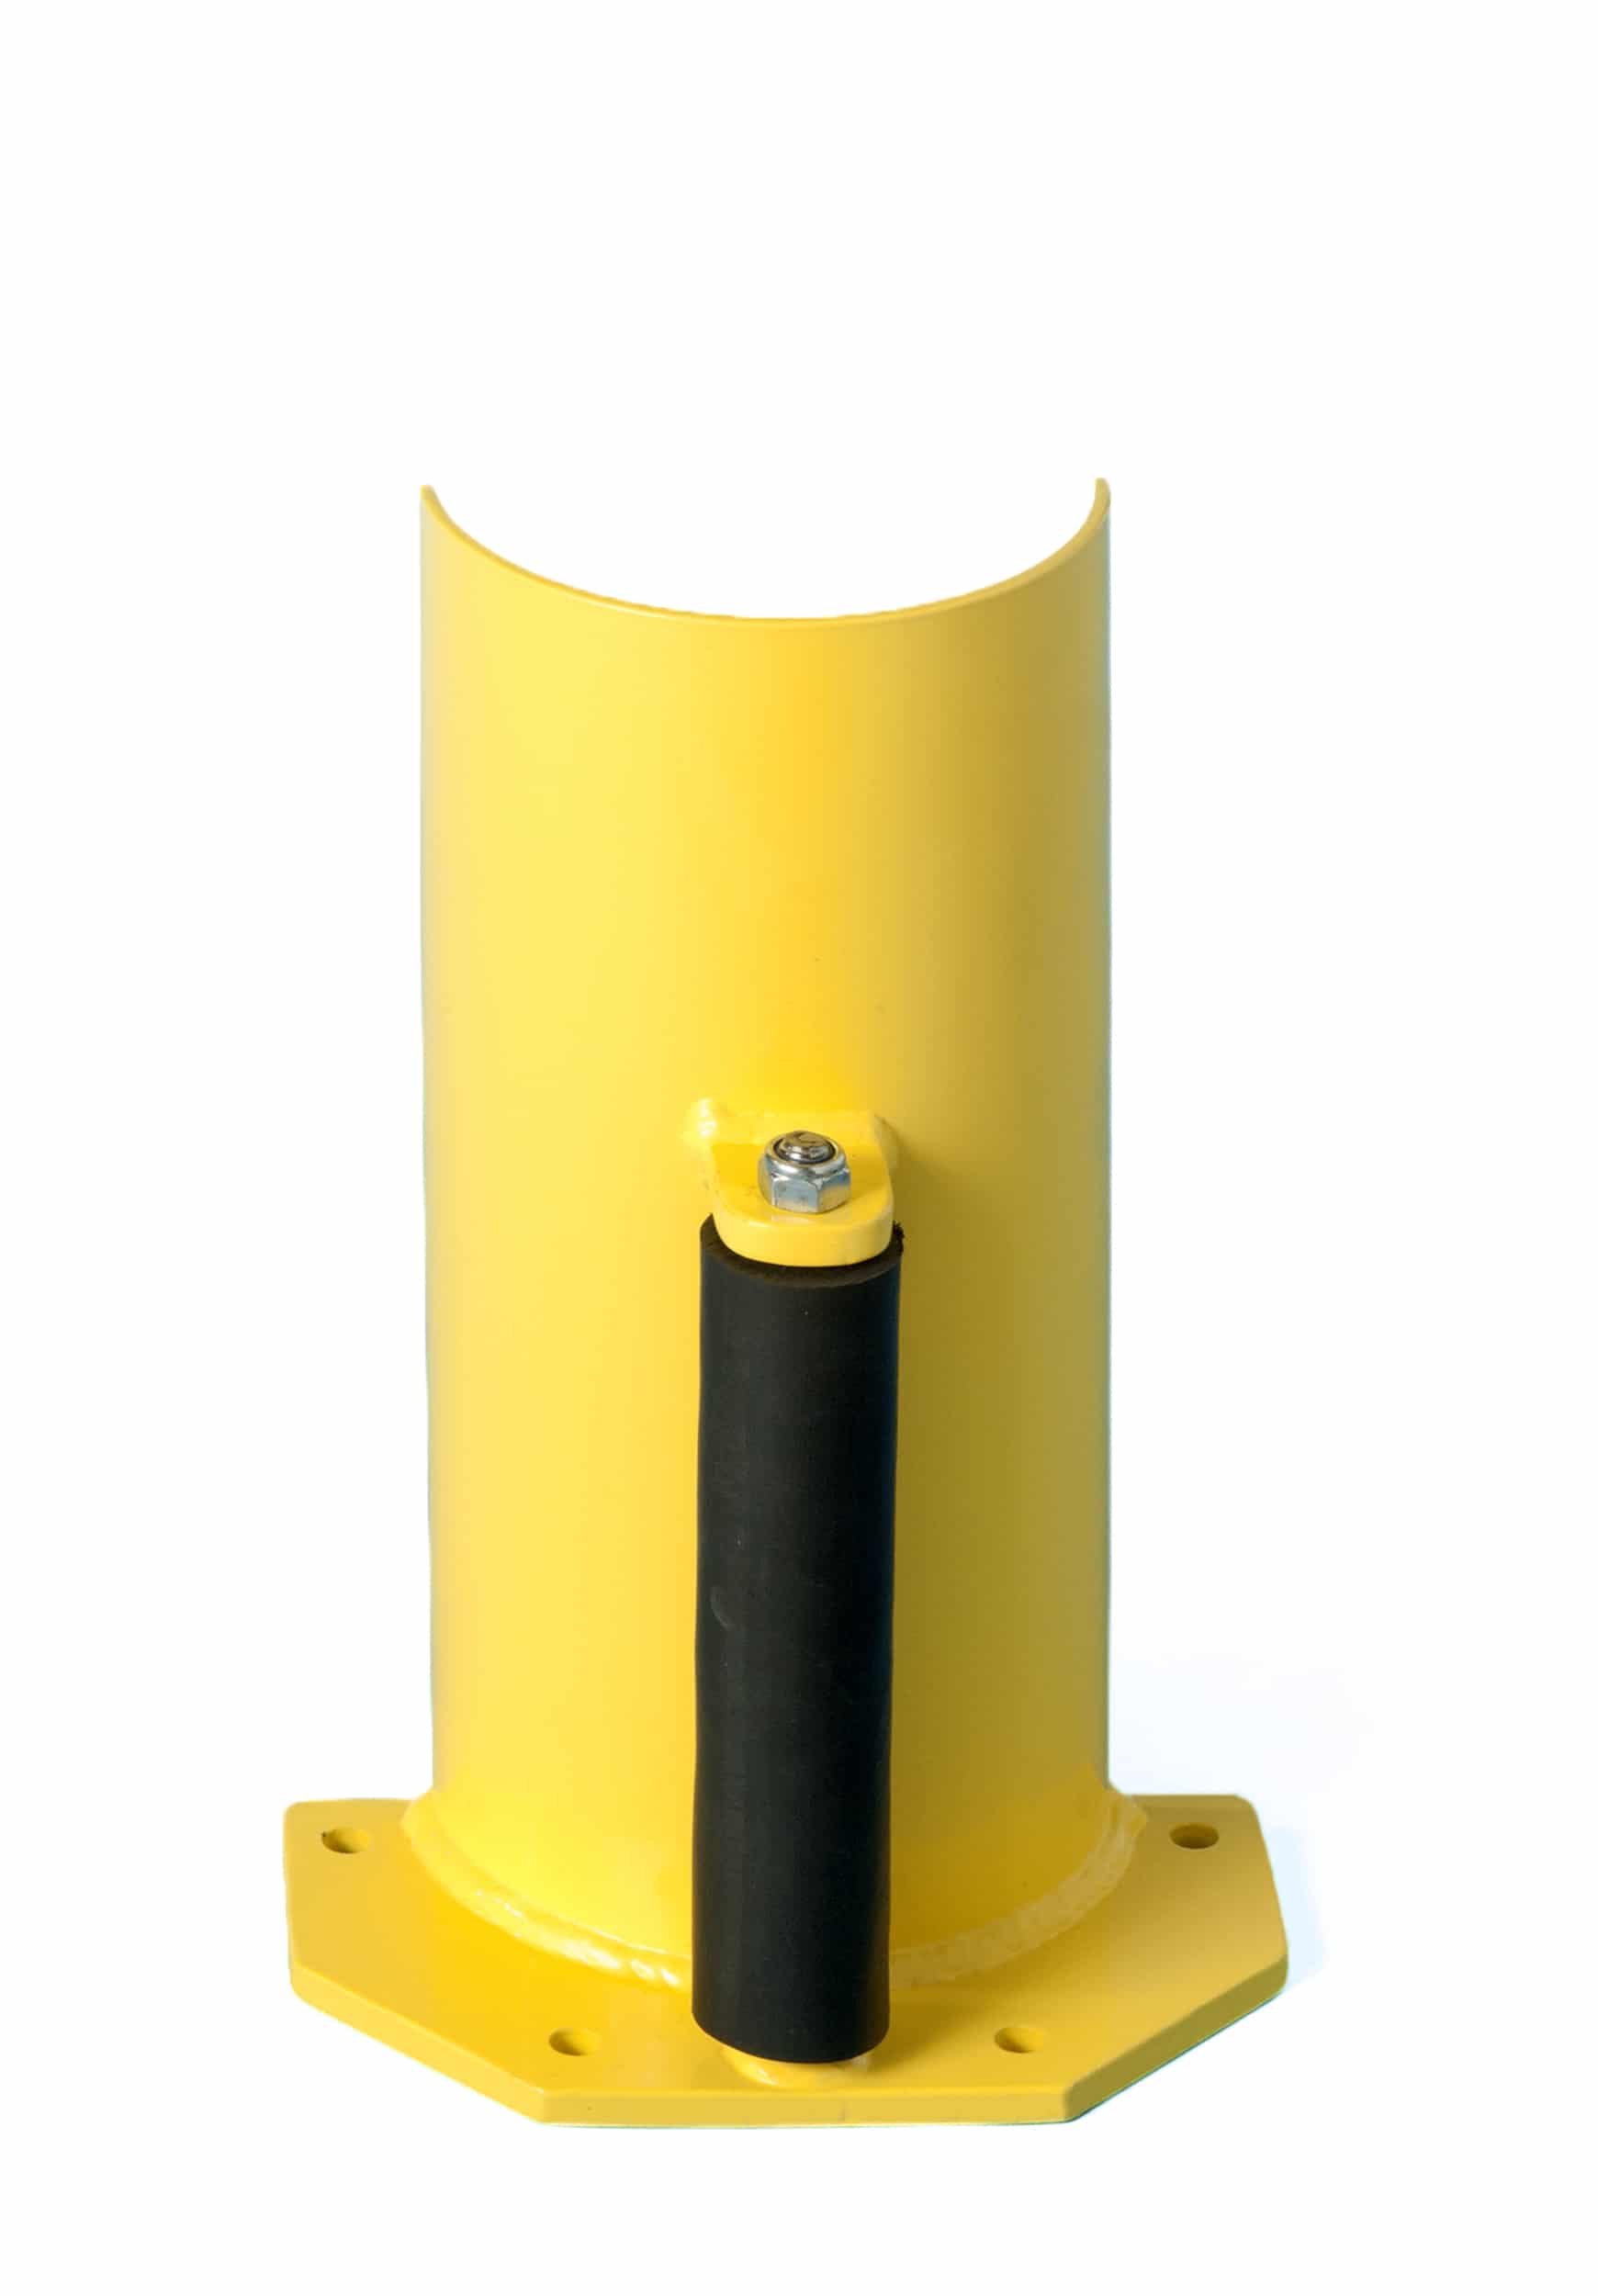 Protector metálico para estanterías industriales. De forma redonda y color amarillo. Tiene un rodillo para transpaletas.